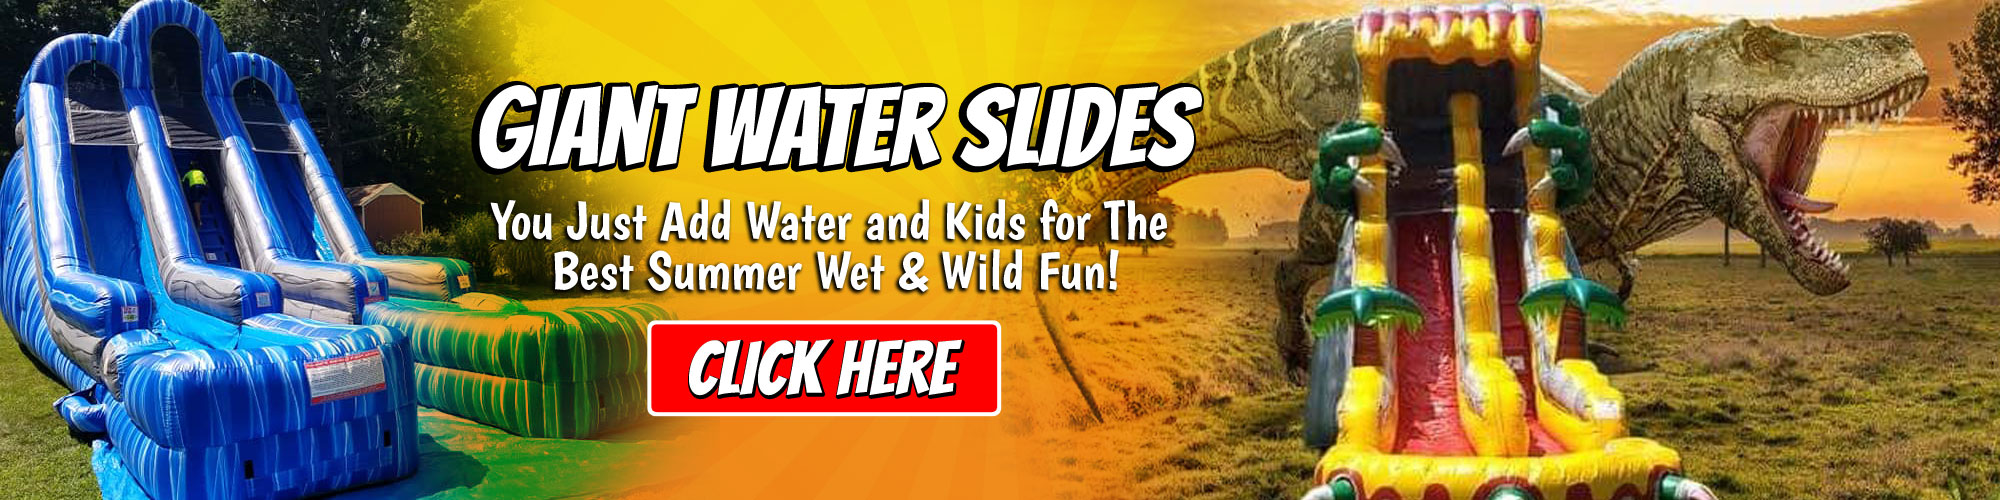 Water Slide Rentals